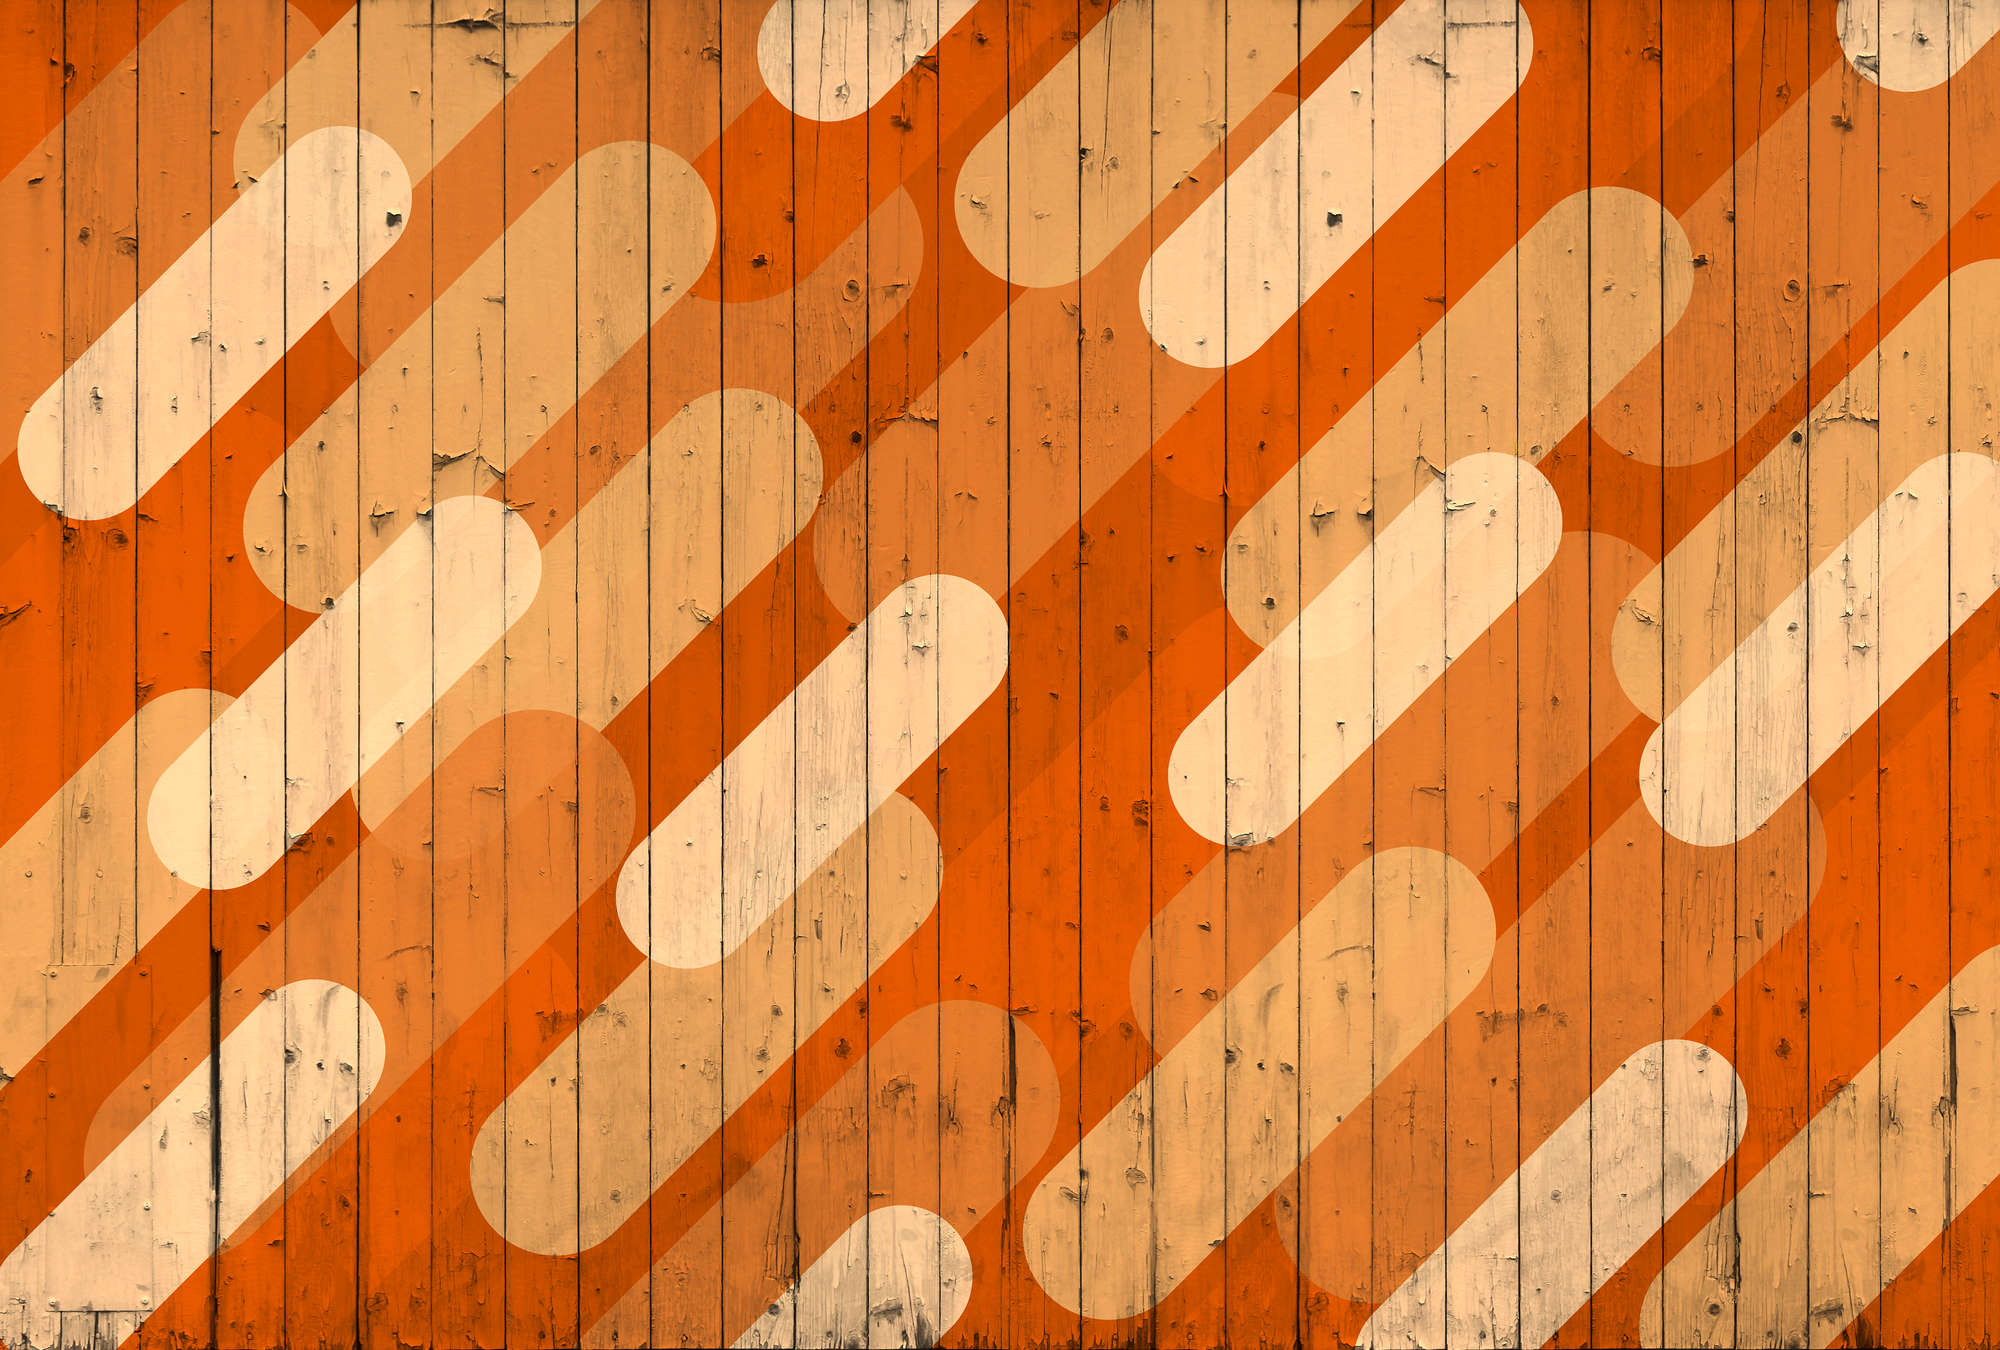             Fotomurali con aspetto di tavola e disegno a strisce diagonali - Arancione, Beige, Crema
        